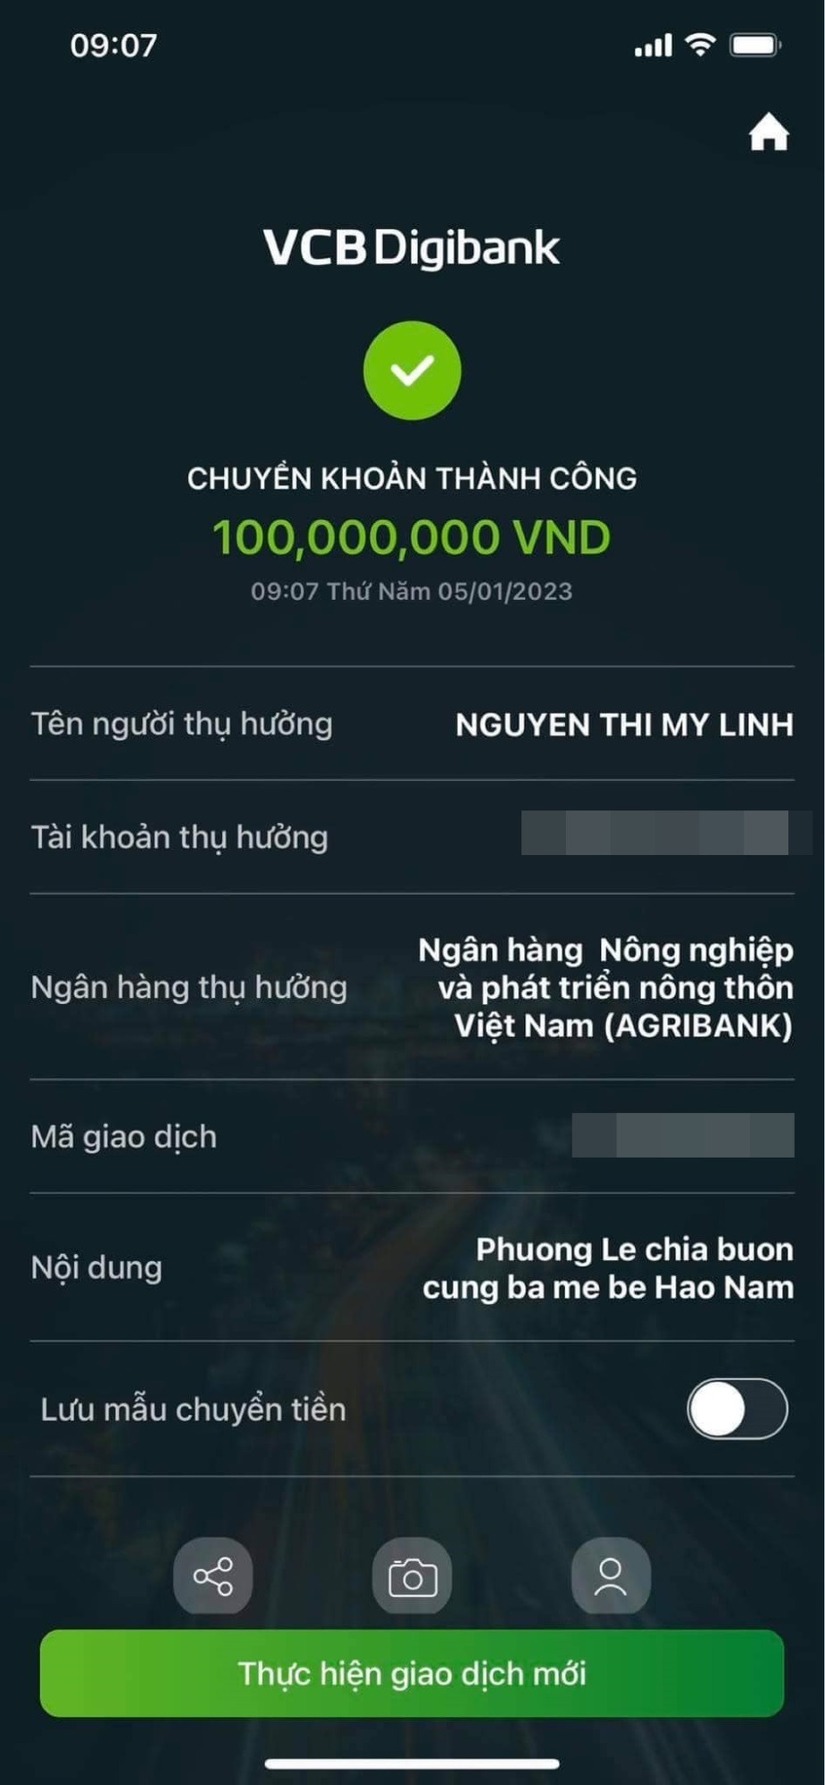 Sau phát ngôn gây tranh cãi, hoa hậu Phương Lê đã ủng hộ gia đình bé Hạo Nam 100 triệu đồng